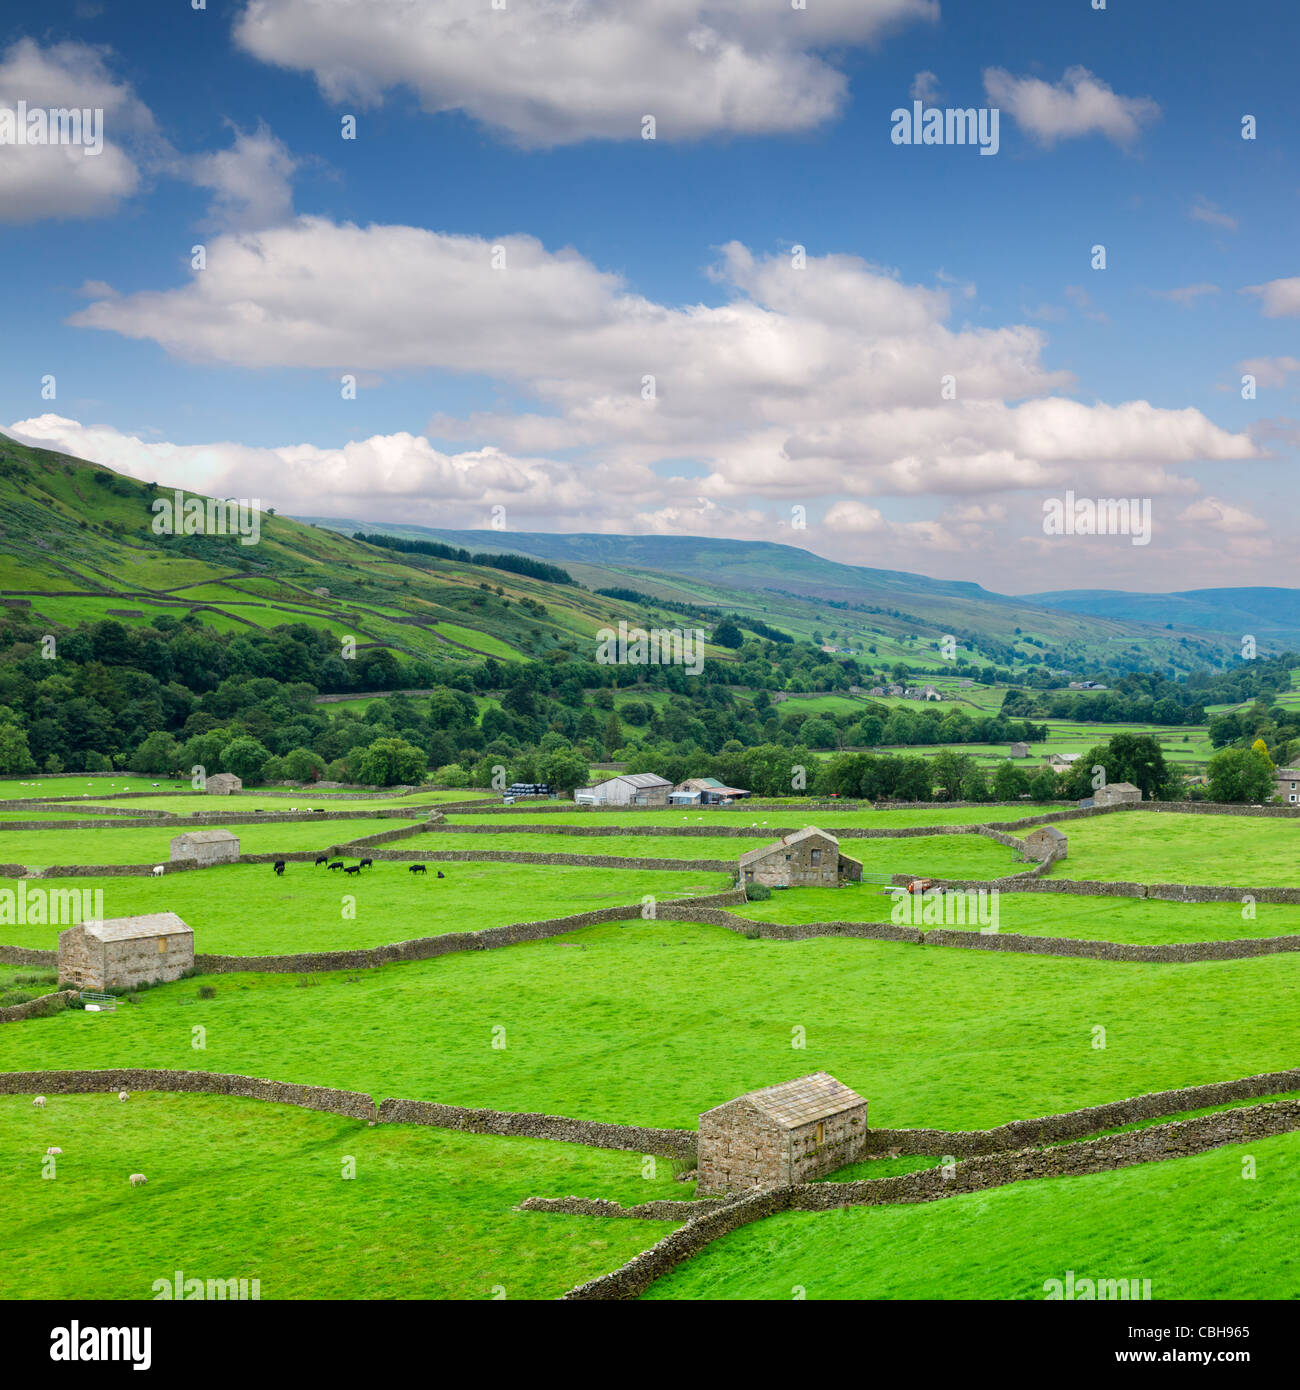 Una scena pacifica in Swaledale, North Yorkshire, Inghilterra, con terreni agricoli, i fienili e i muri in pietra a secco. Foto Stock